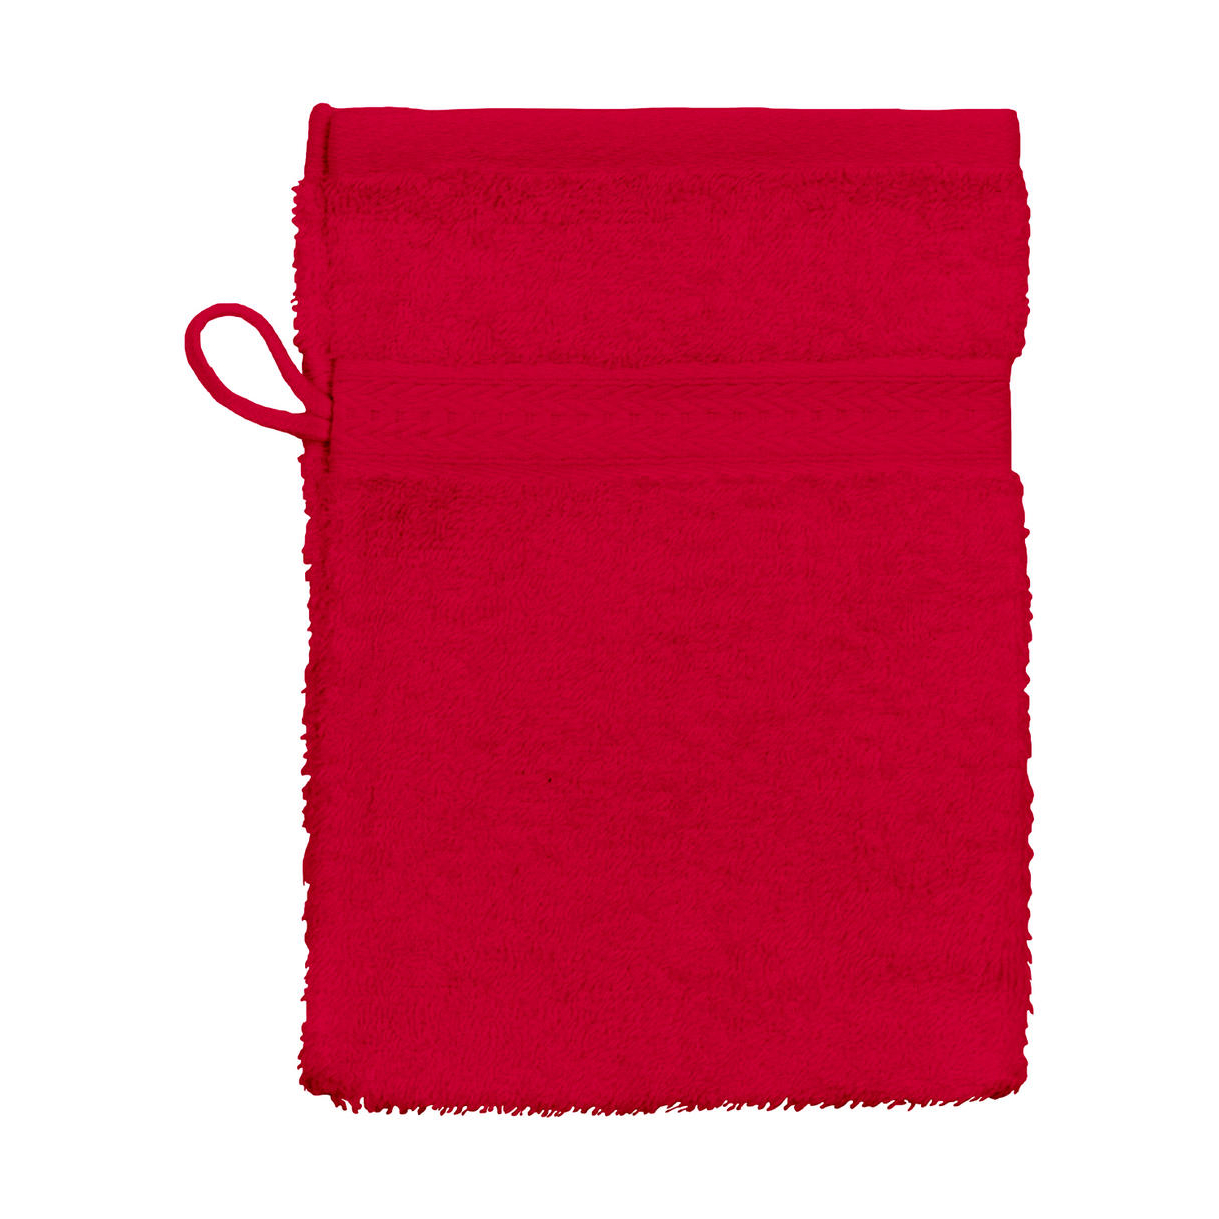 Mycí rukavice Jassz Rhine 16x22 cm - červené, 16x22